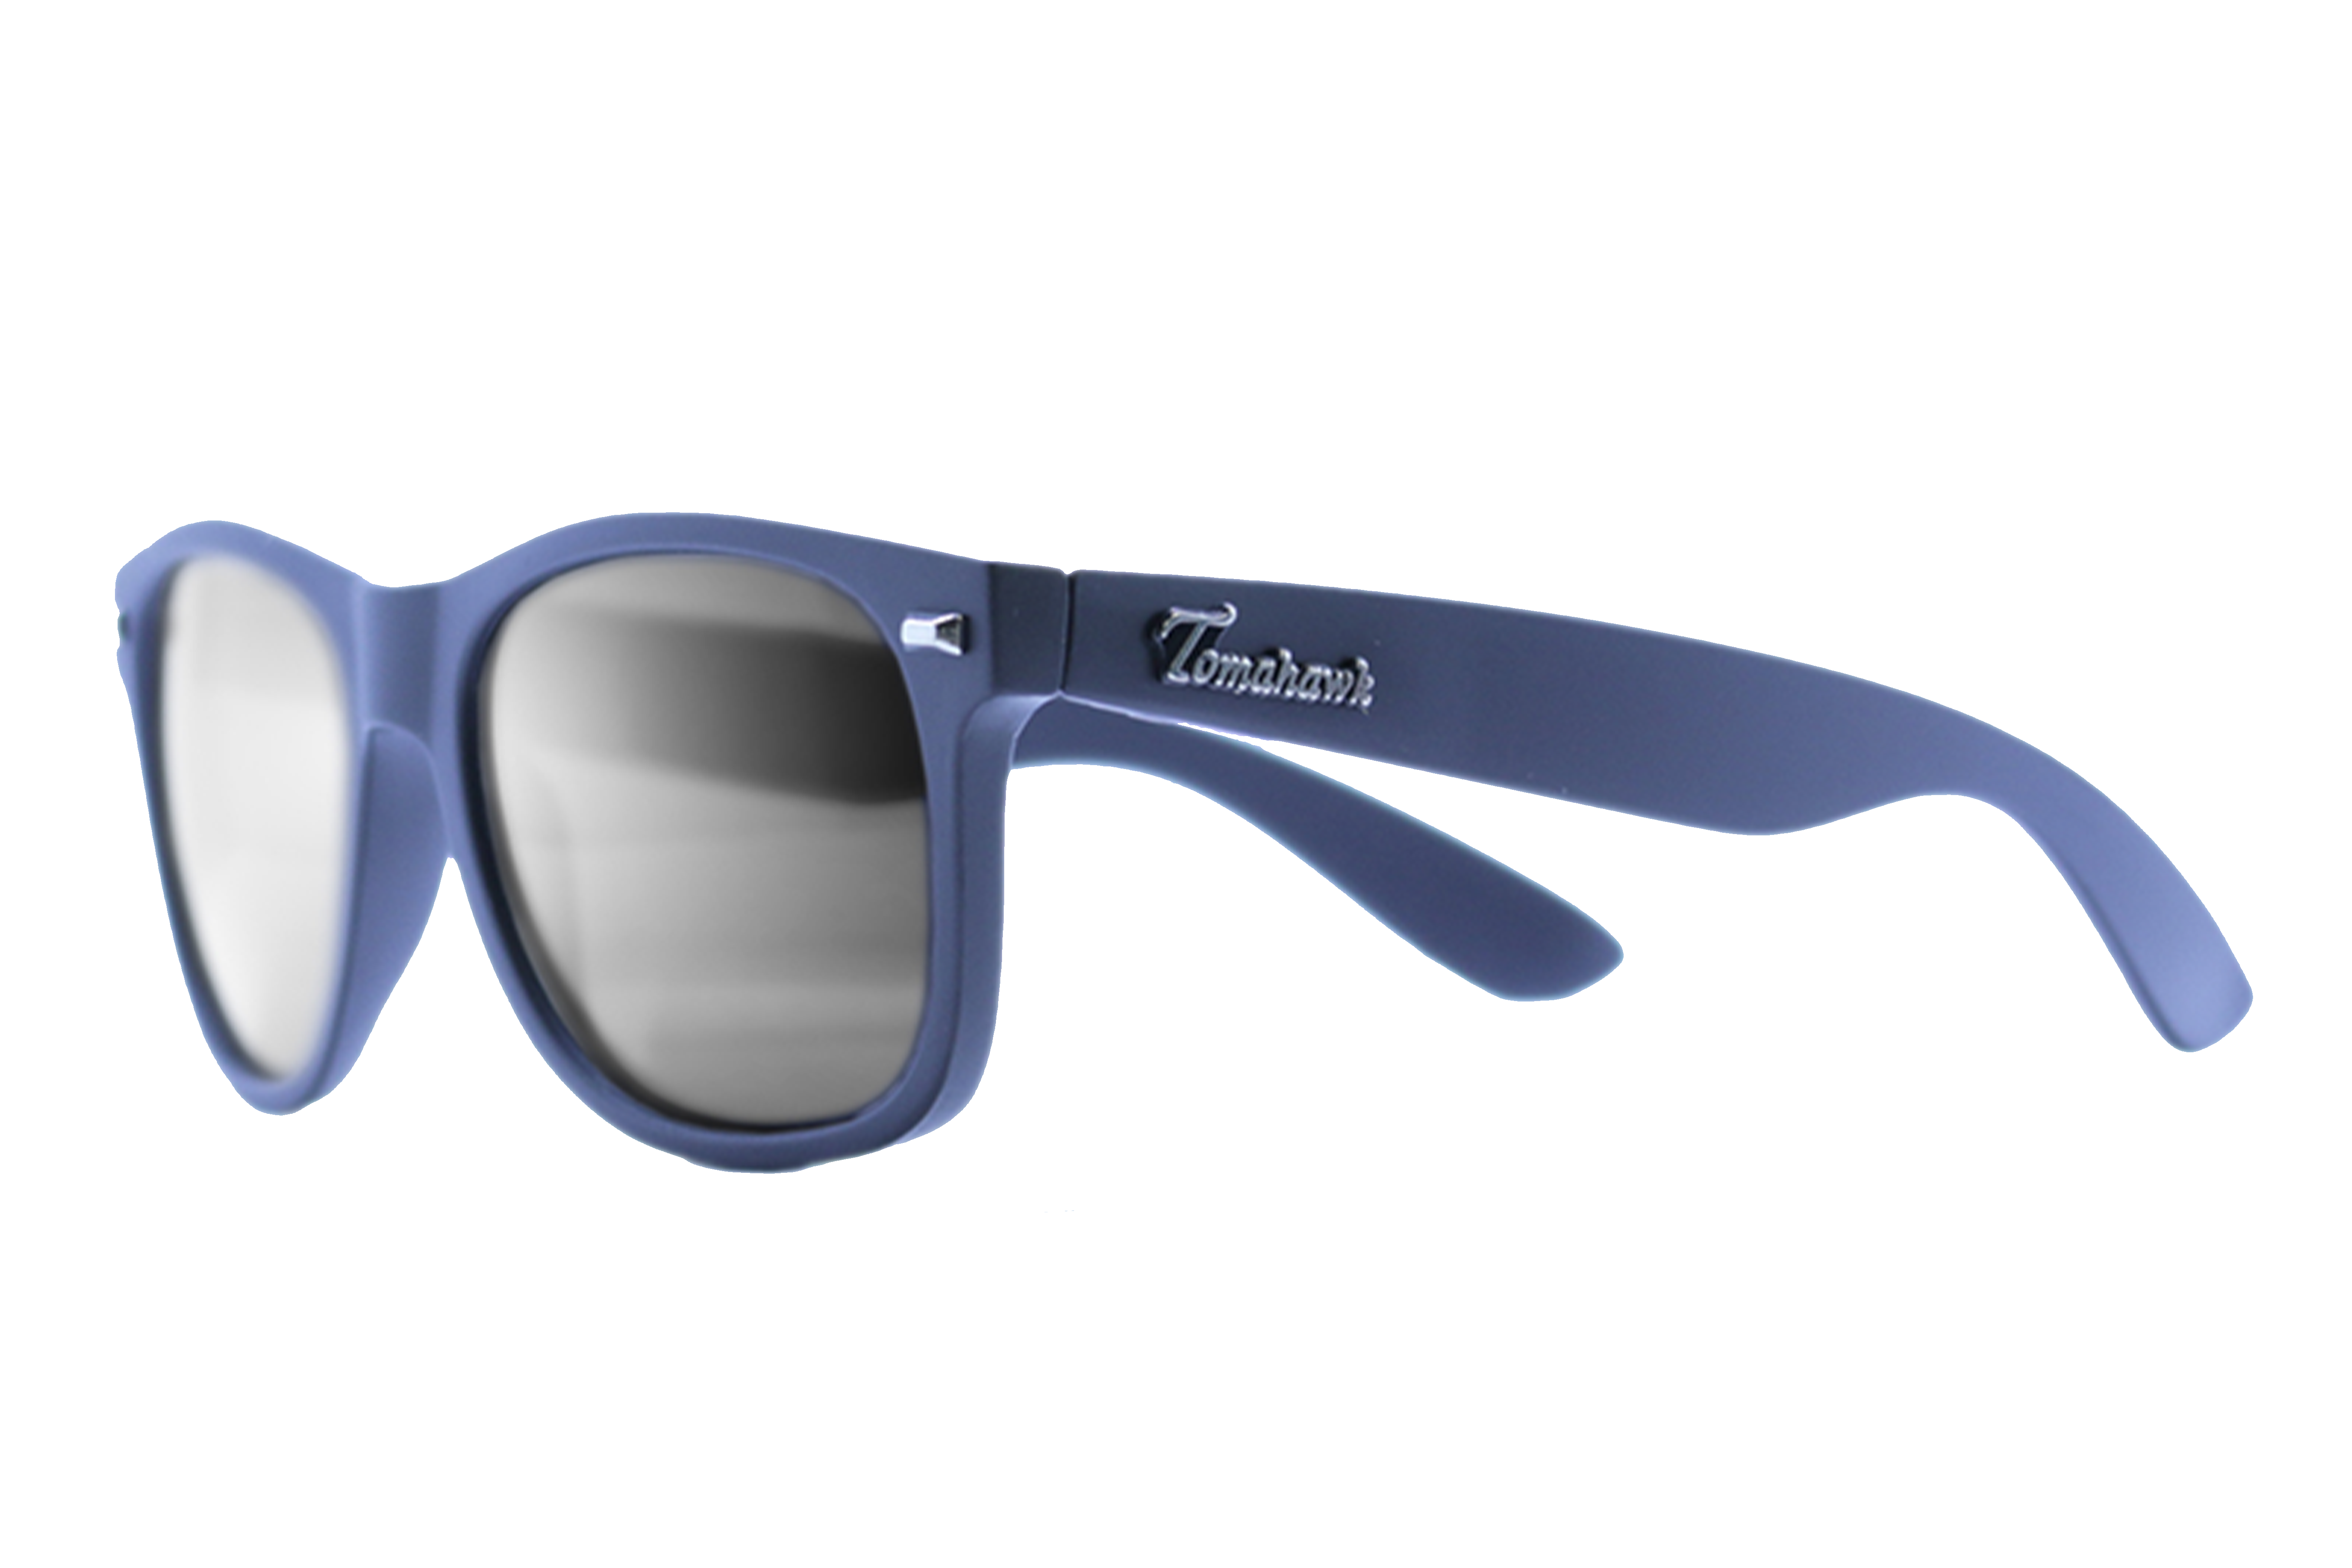 Tomahawk Shades Elite Class Sunglasses for Men & Women - Impact Resistant Lenses & Full UV400 Protection